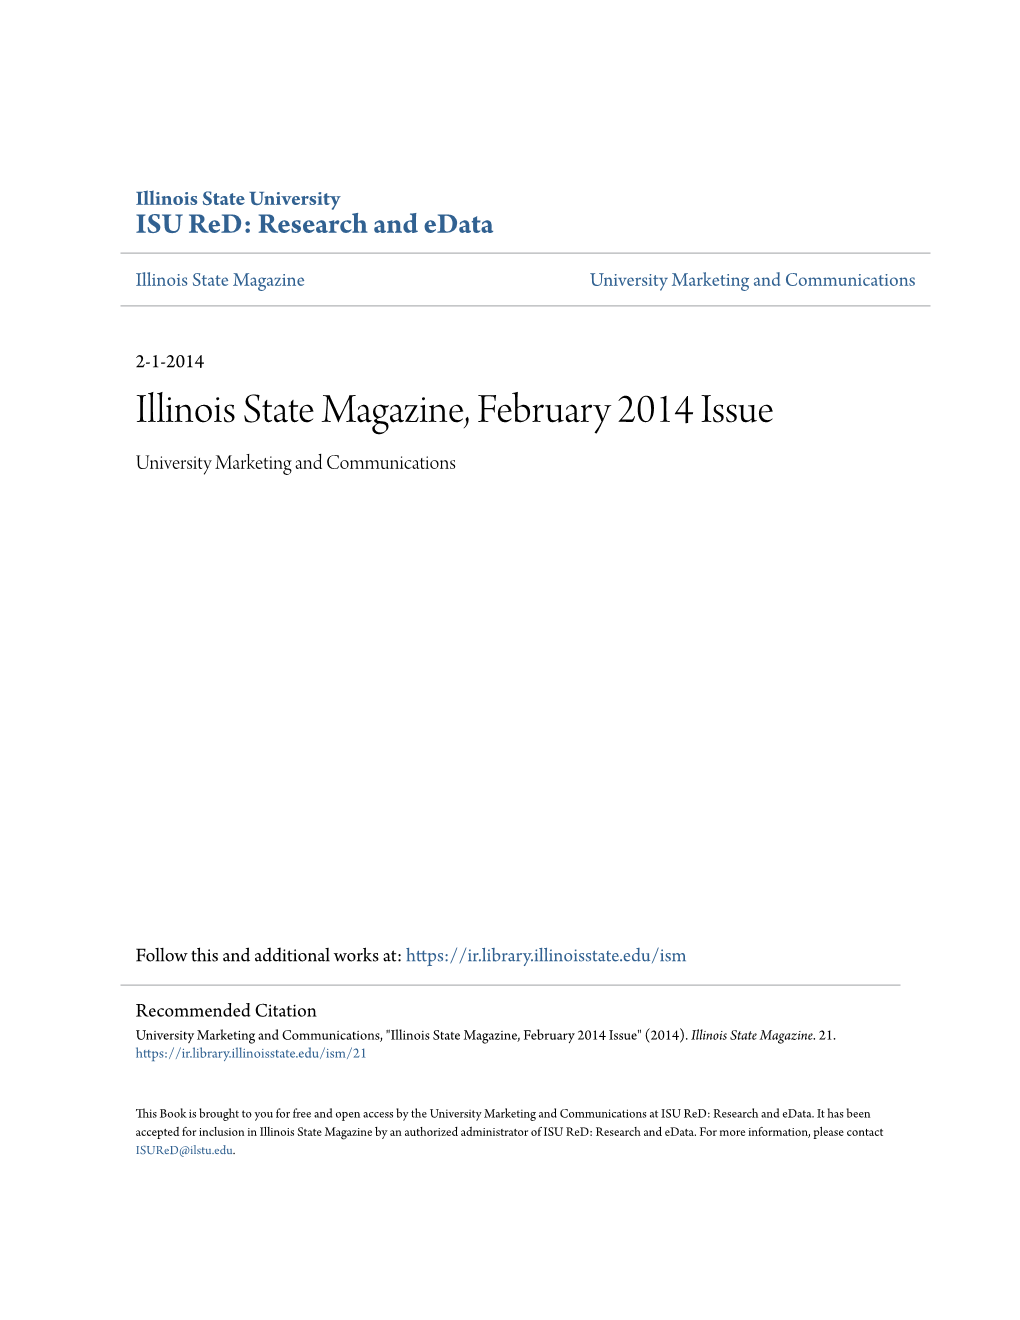 Illinois State Magazine, February 2014 Issue University Marketing and Communications